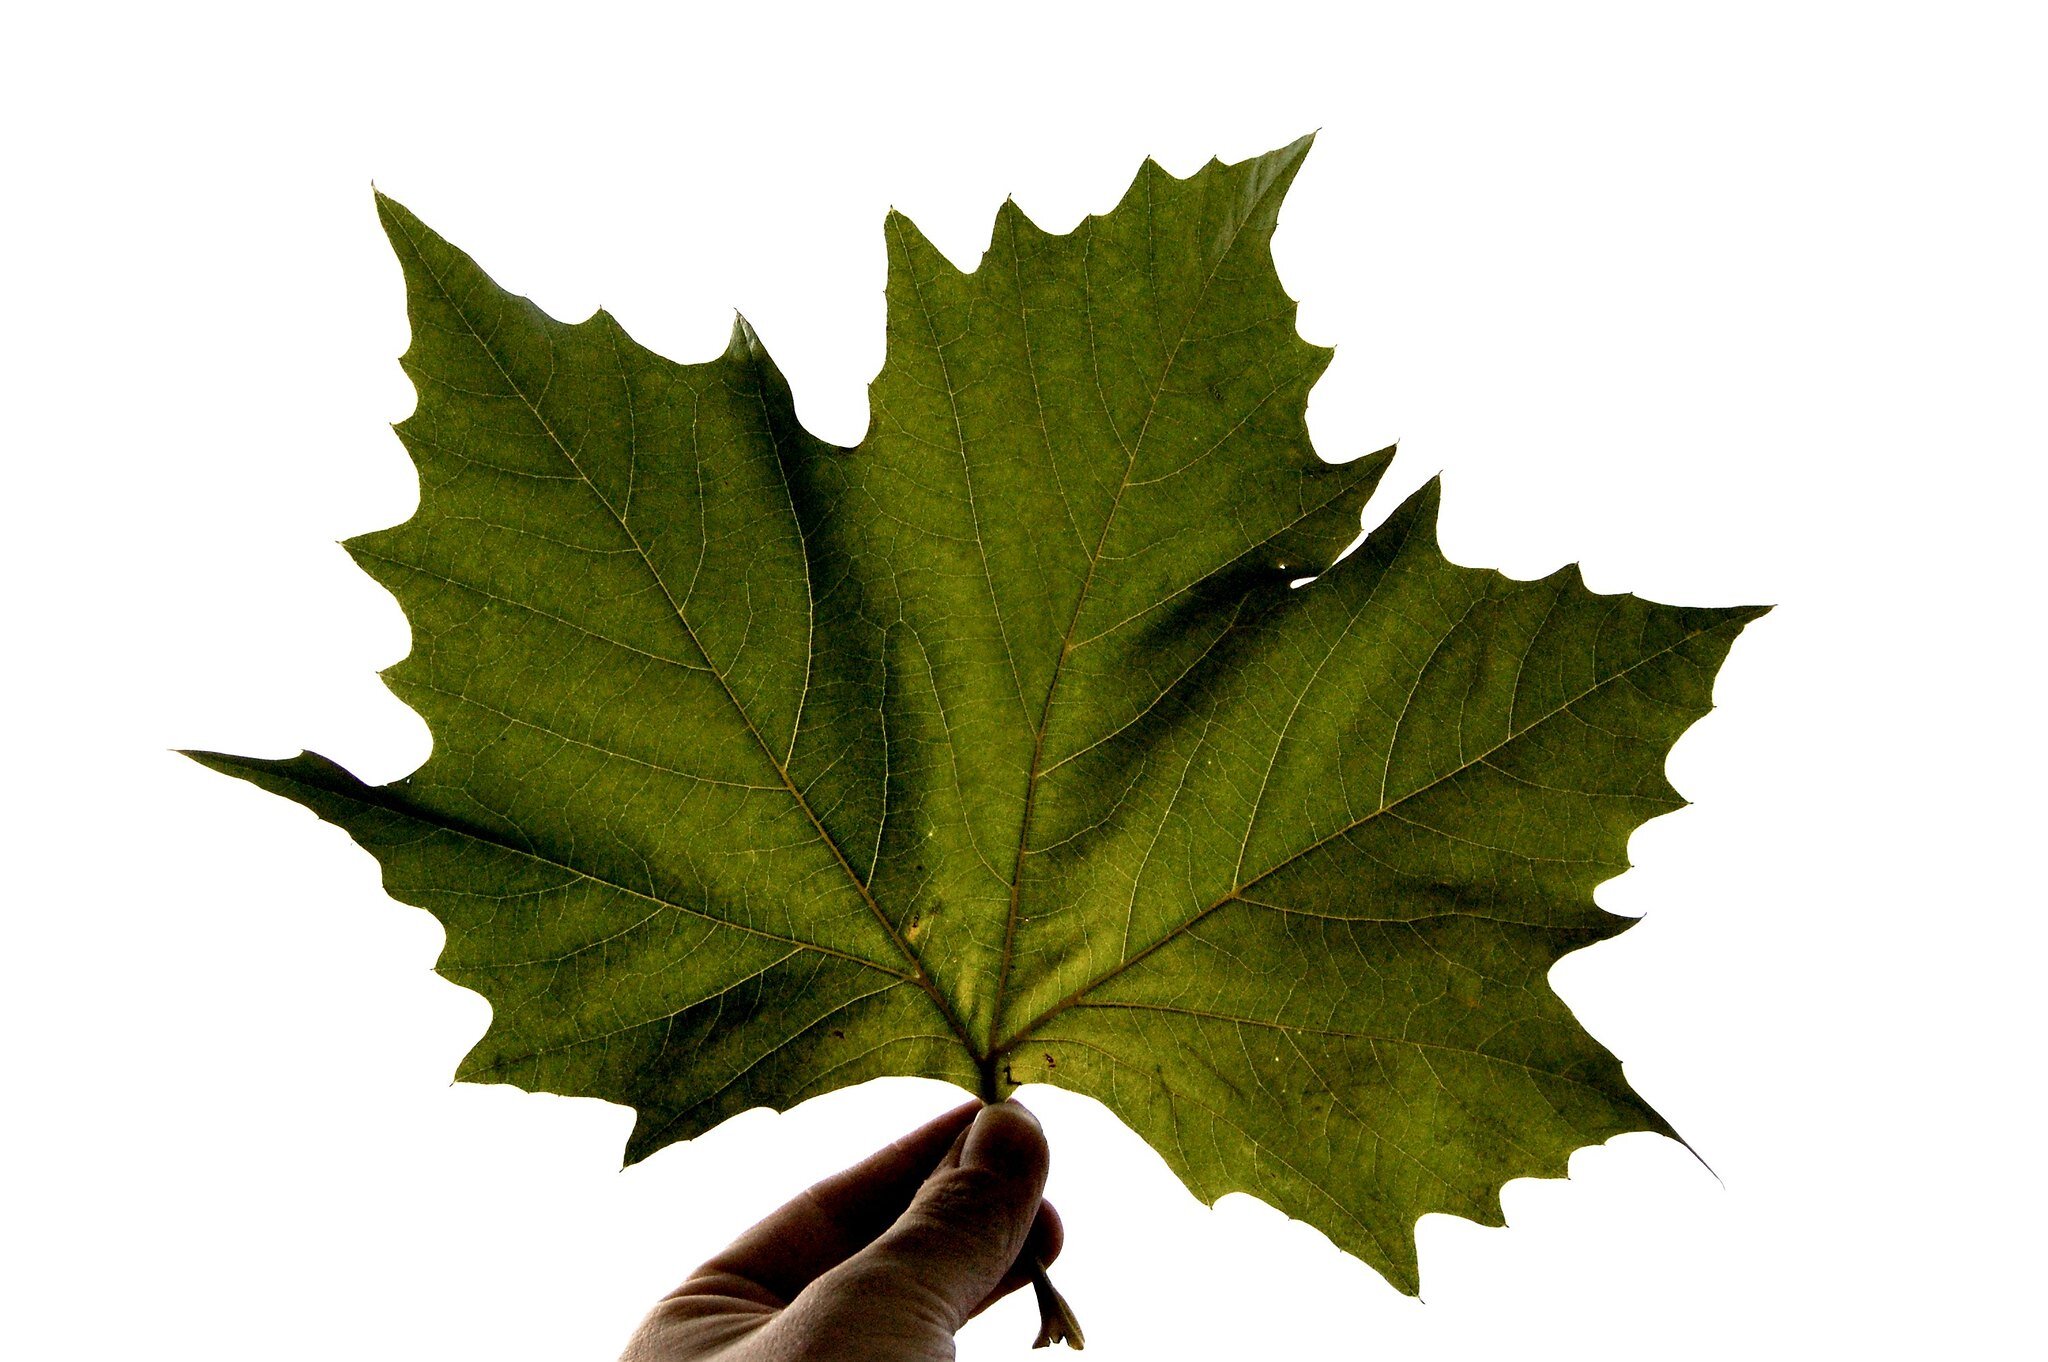 Photograph a Leaf (Copy)